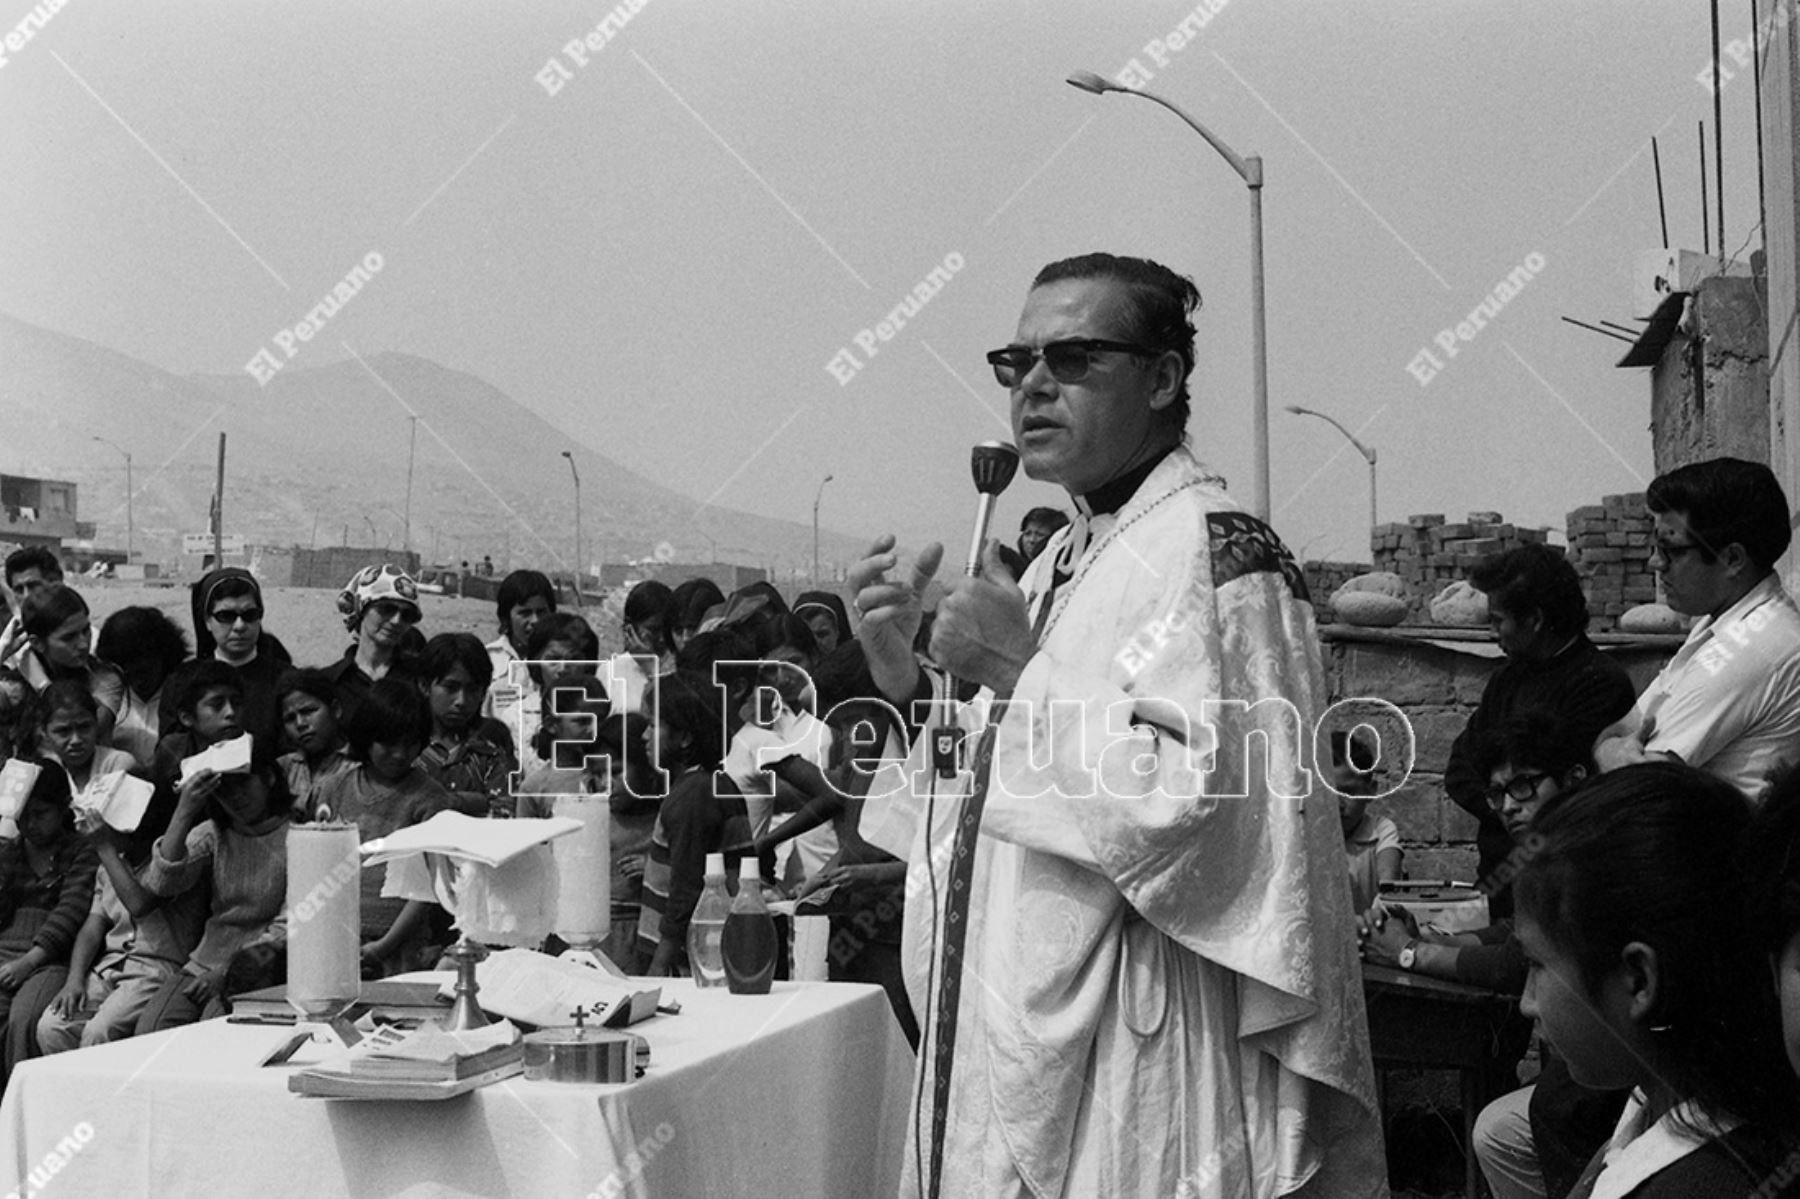 Lima - 20 junio 1976 / Monseñor Luis Bambarén celebró una misa por el aniversario del pueblo joven Villa San Luis en San Juan de Miraflores.  Foto: Archivo Histórico de El Peruano / Víctor Palomino